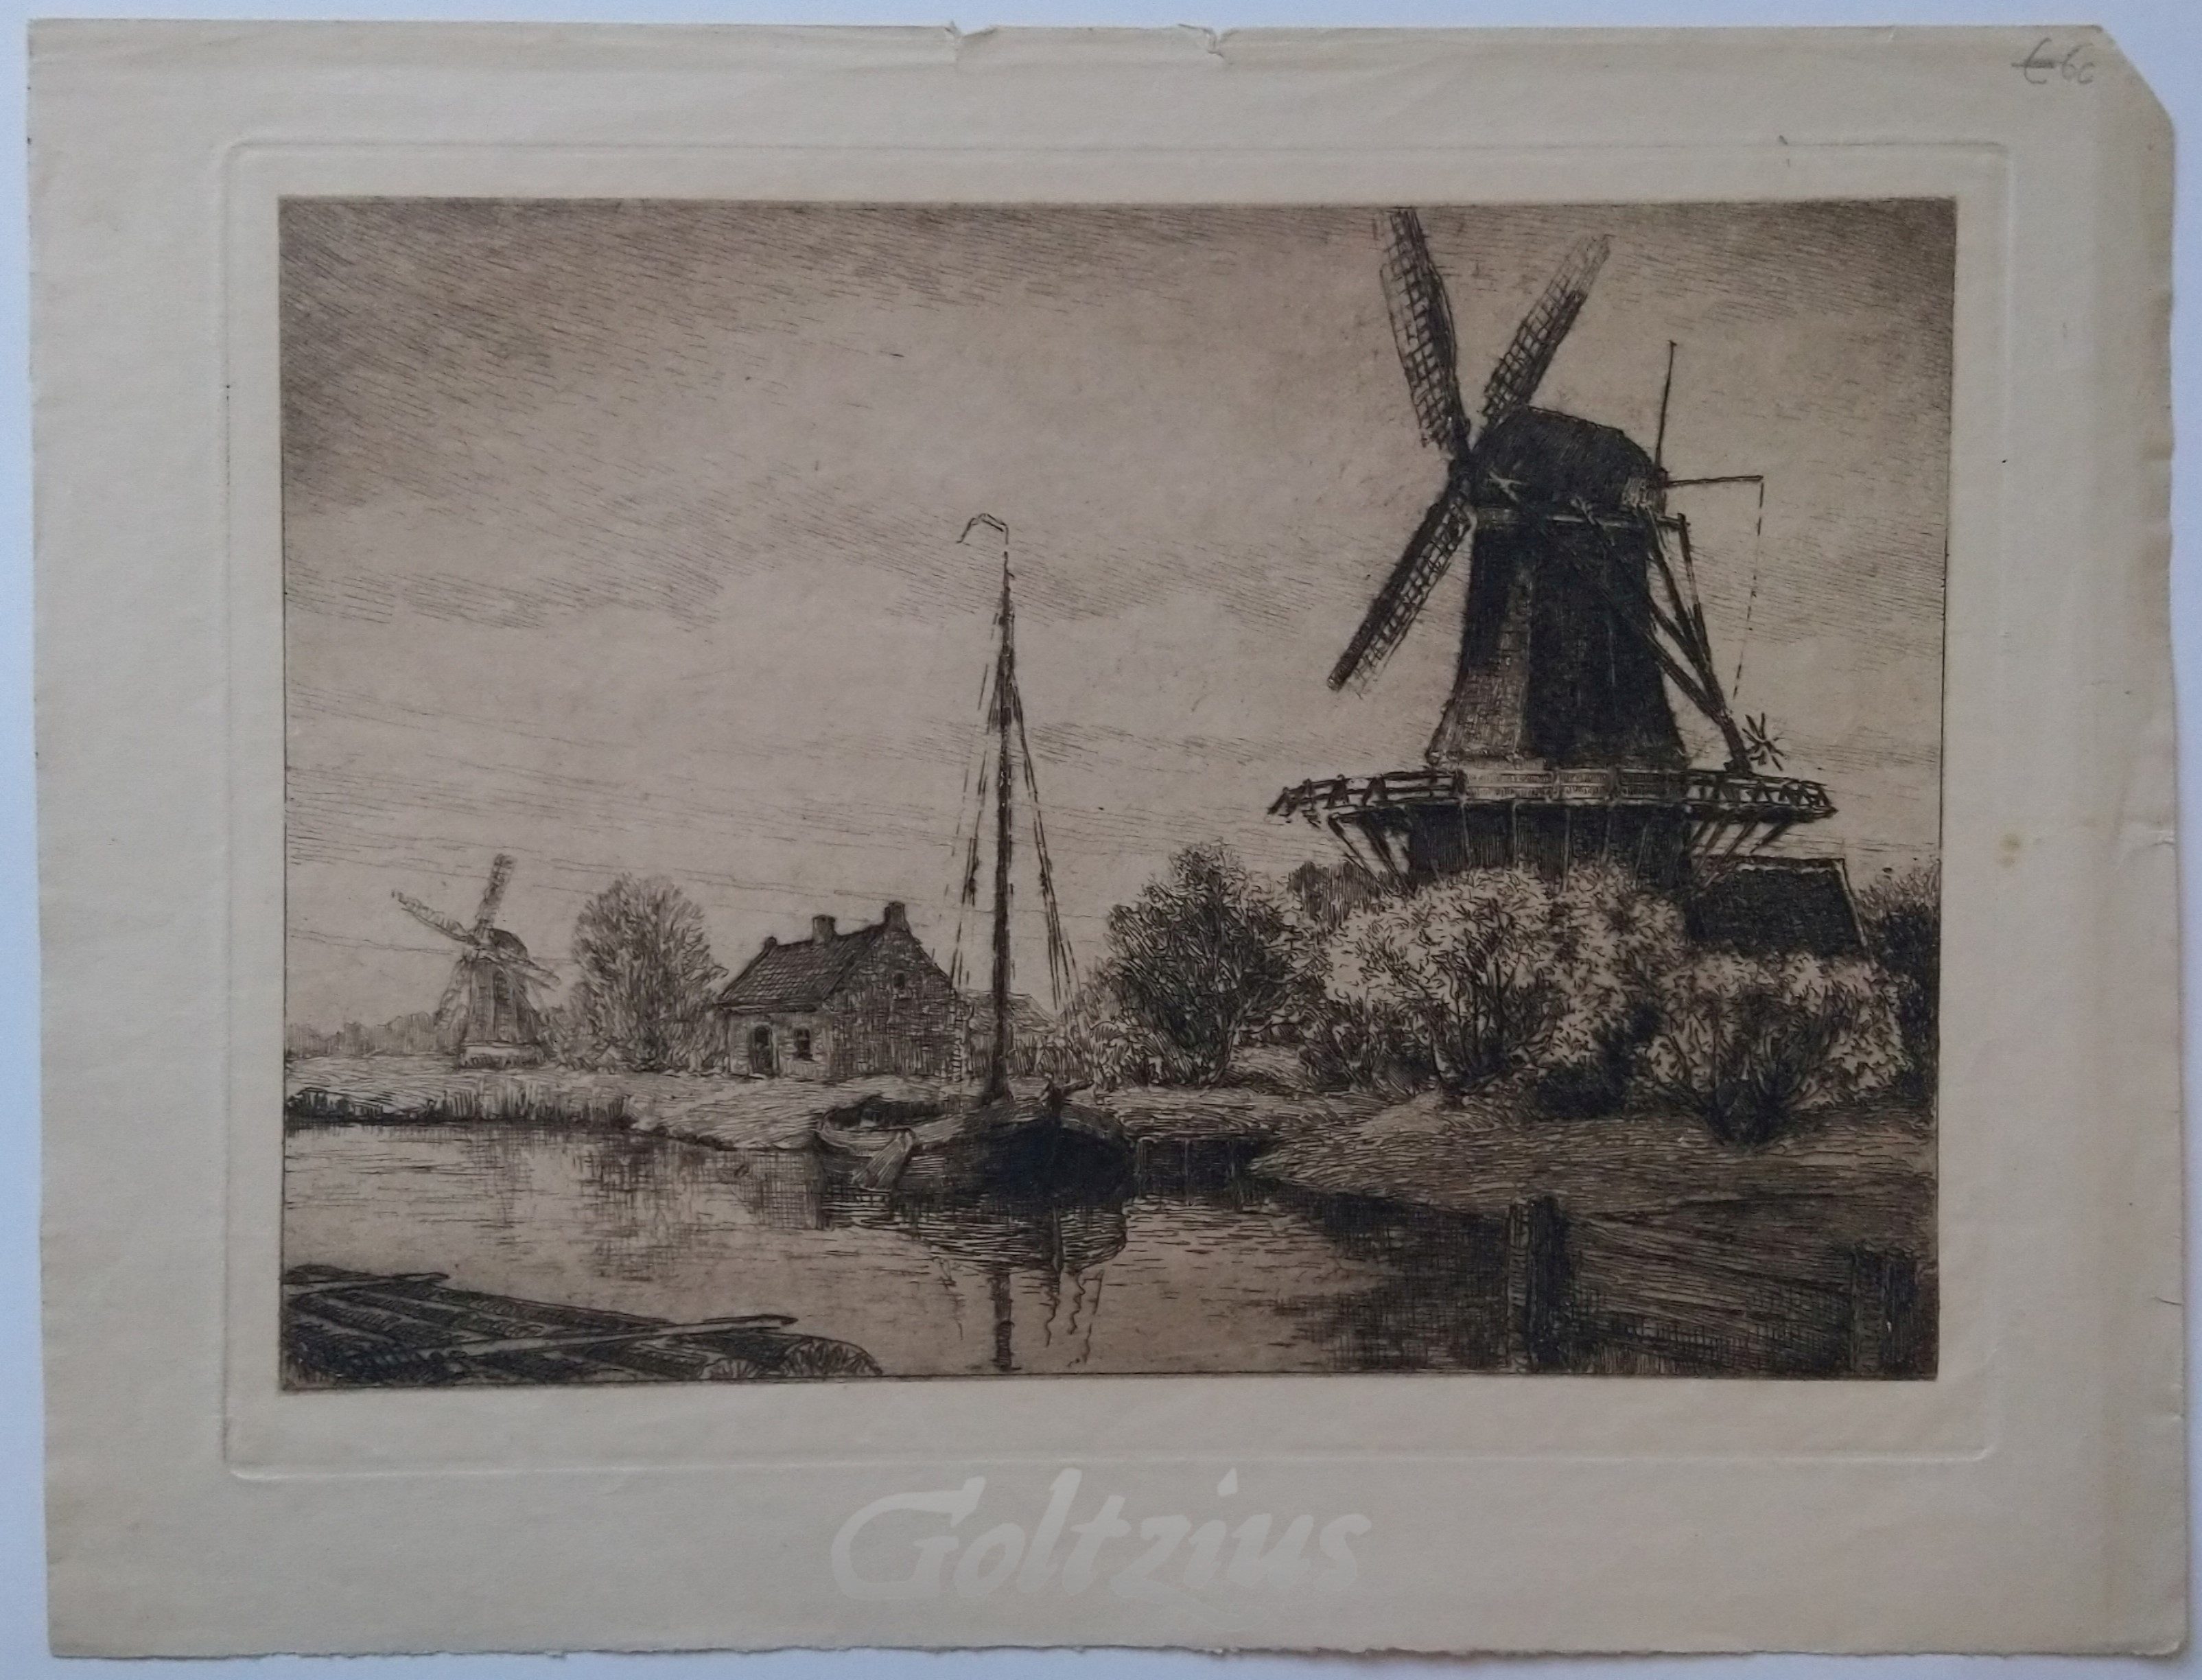 MATTHES, OSKAR PAUL, Landscape with windmills along a canal